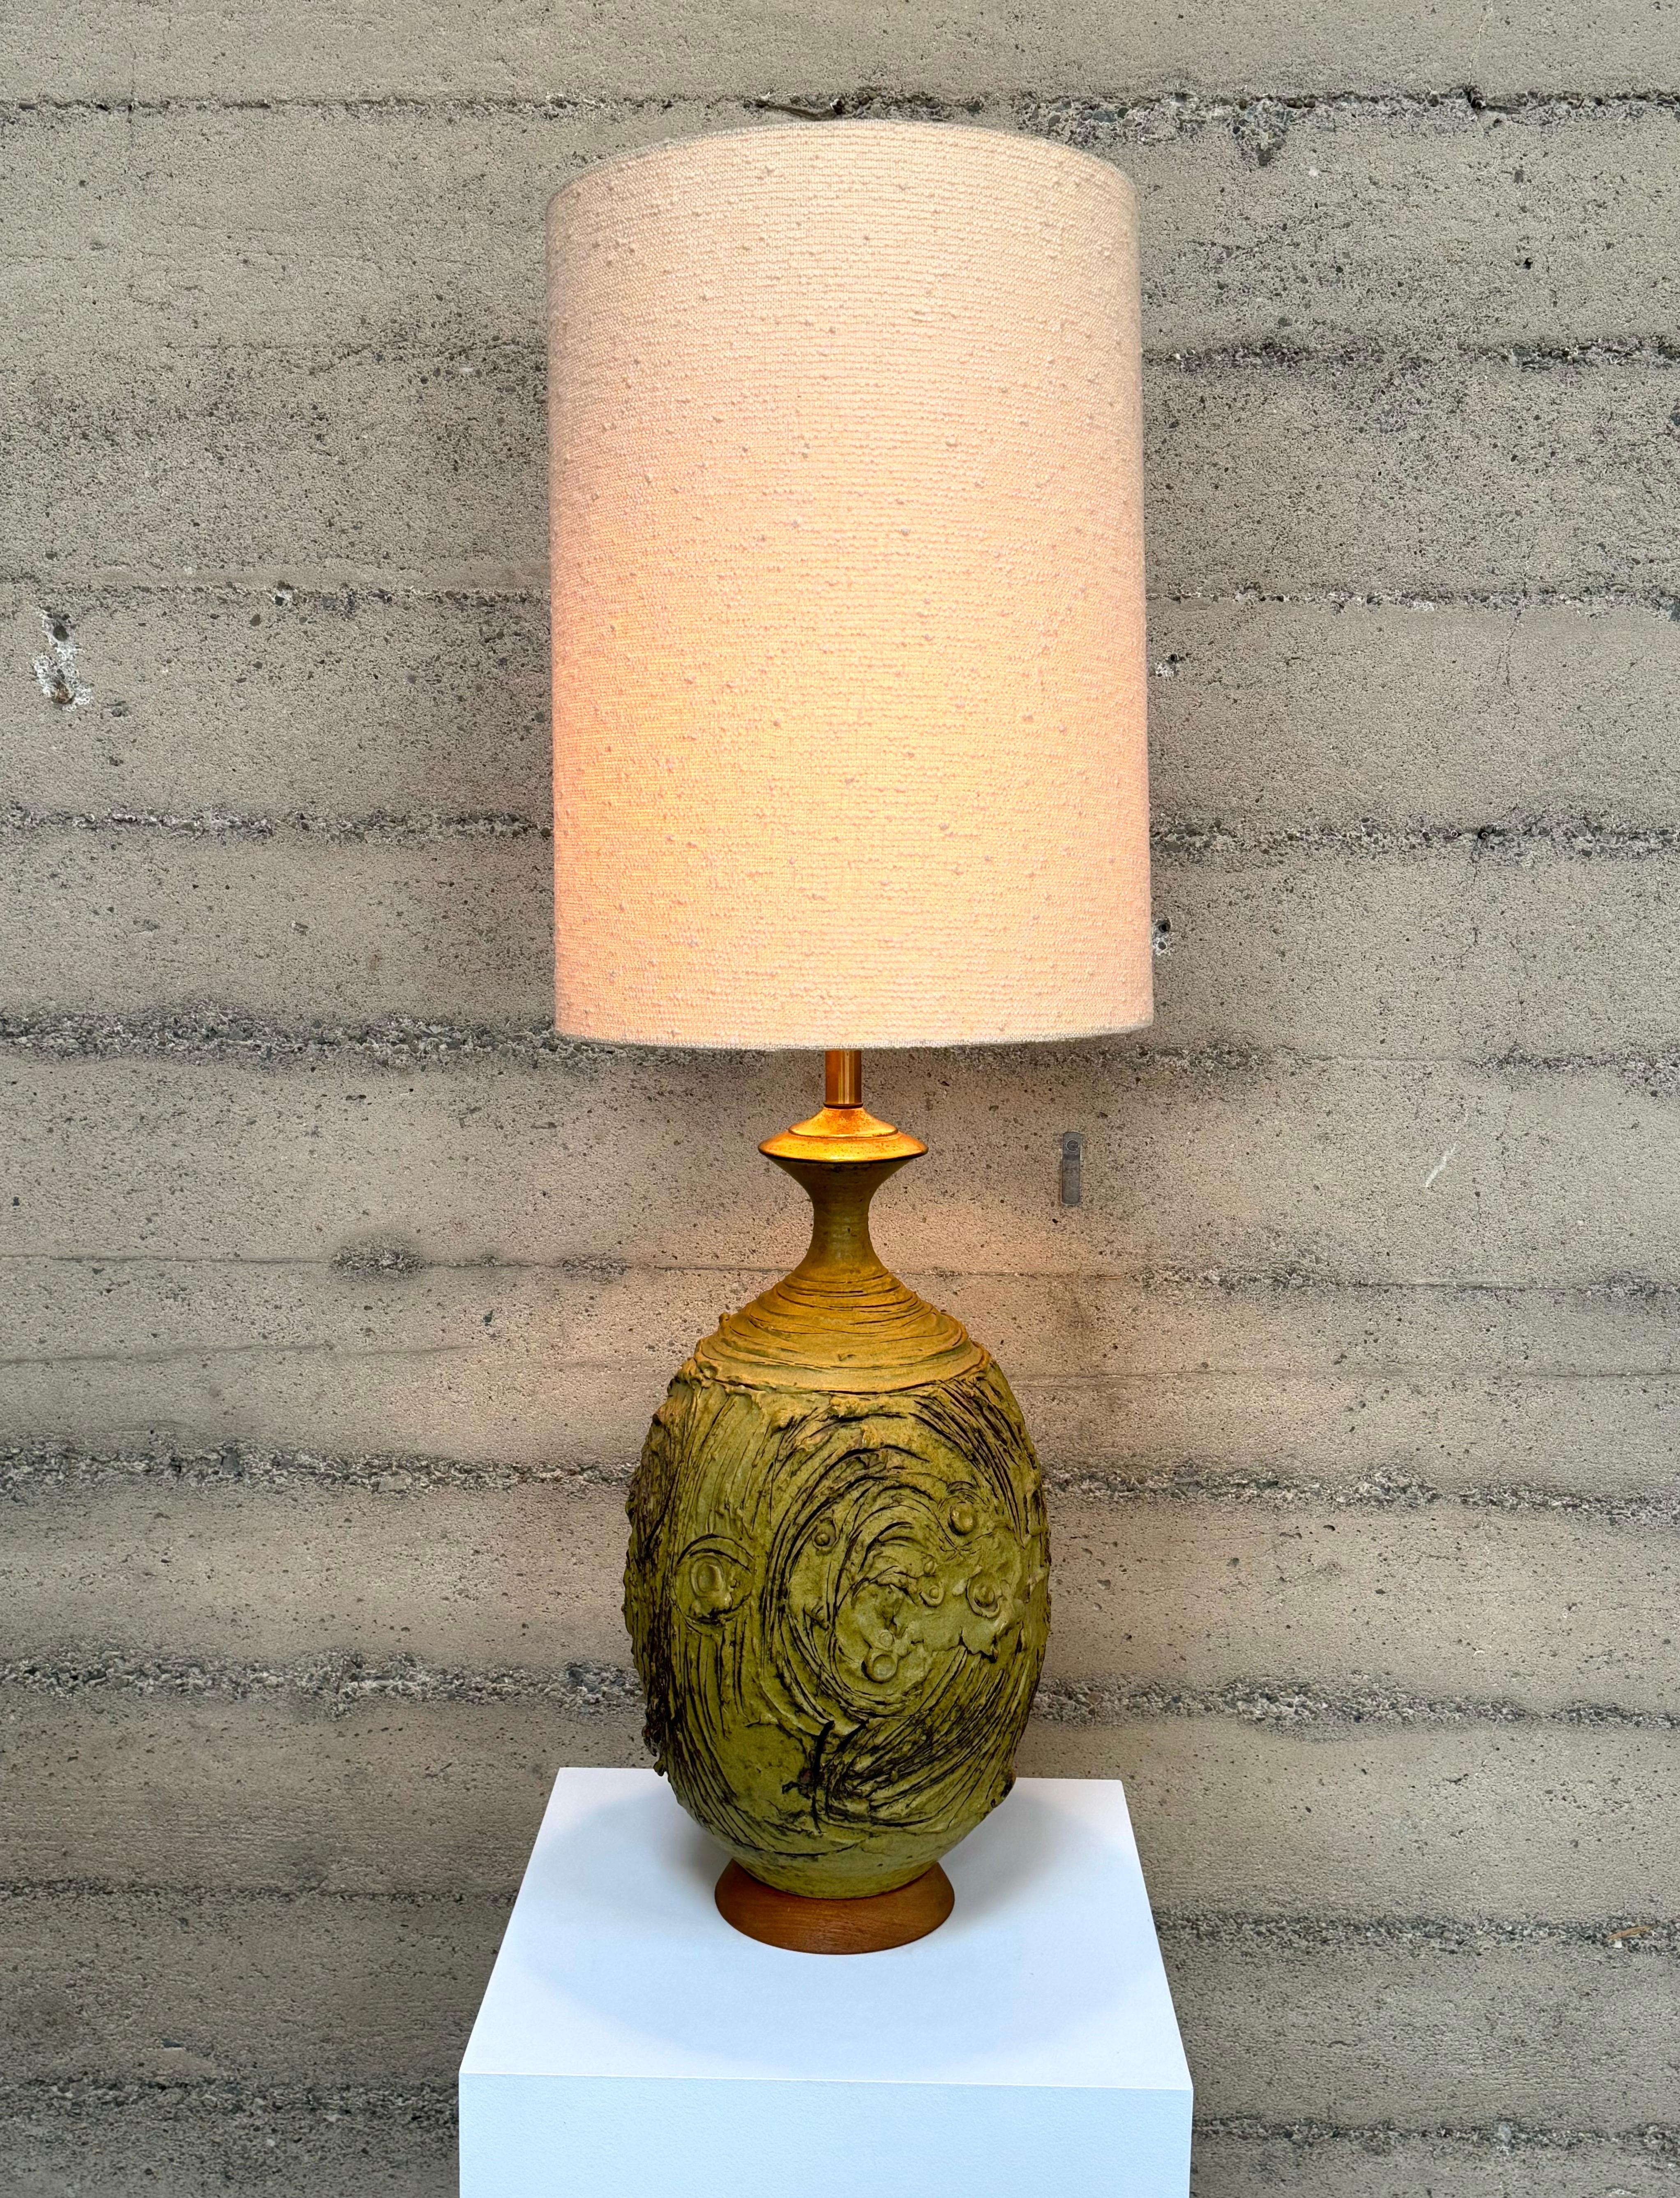 Keramik-Tischlampe aus Steinzeug von der kalifornischen Keramikkünstlerin Victoria Littlejohn. Die Lampe hat eine erdige Textur, ist senfglasiert und hat einen Sockel aus Walnussholz. Die Lampe hat den originalen Schirm, der auf Wunsch mitgeliefert